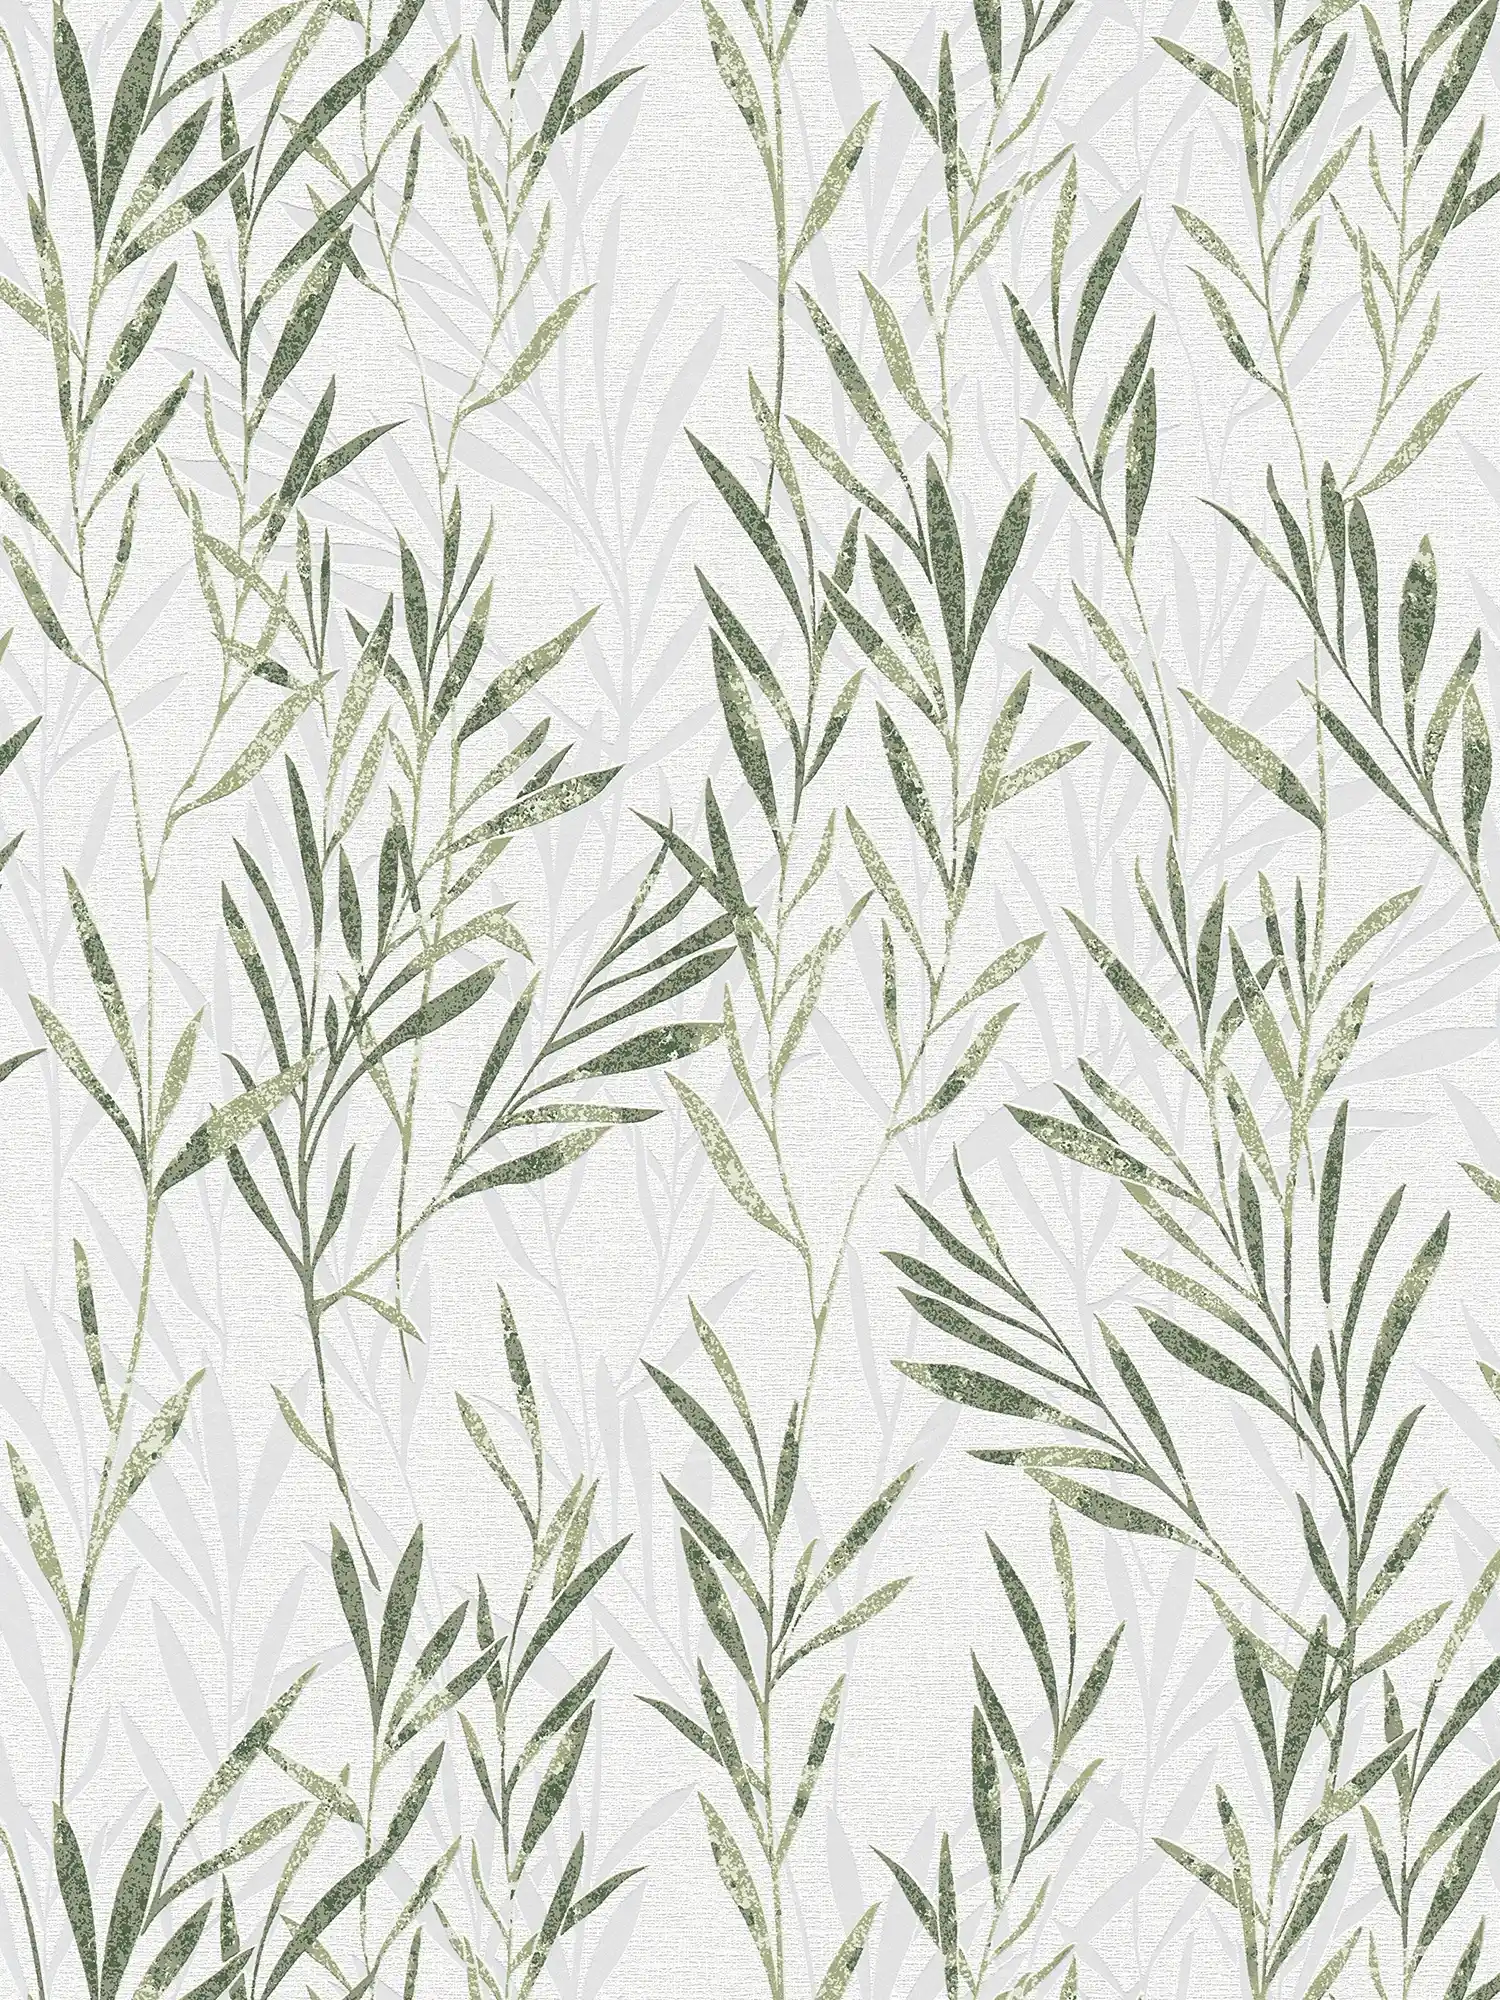 Non-woven wallpaper leaves design & tendril pattern - green, white
